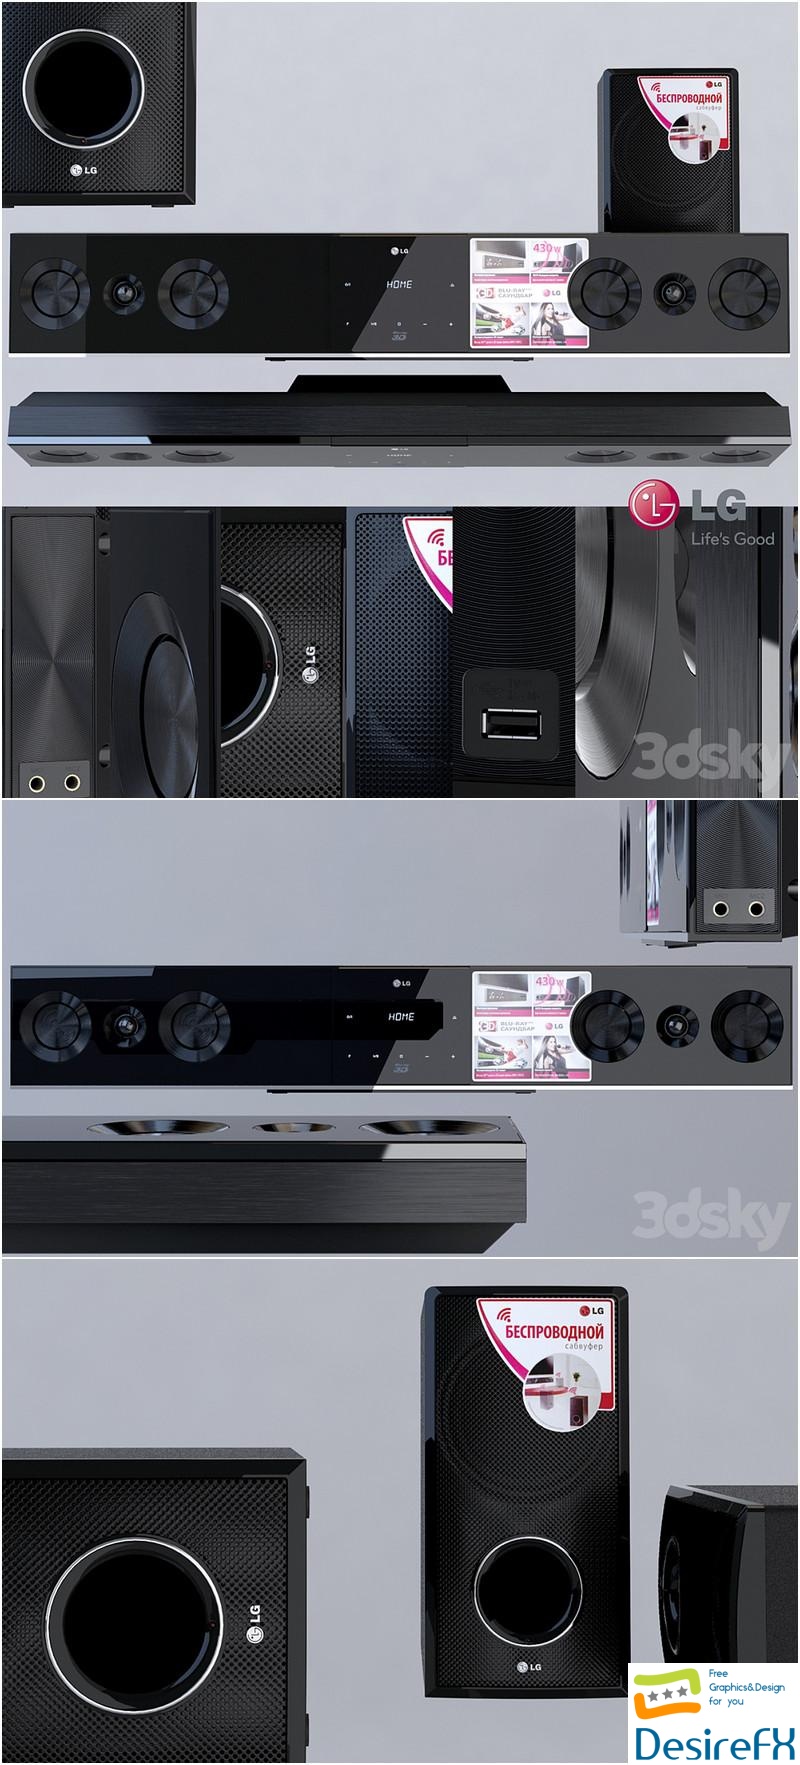 Soundbar LG BB5520A 3D Model